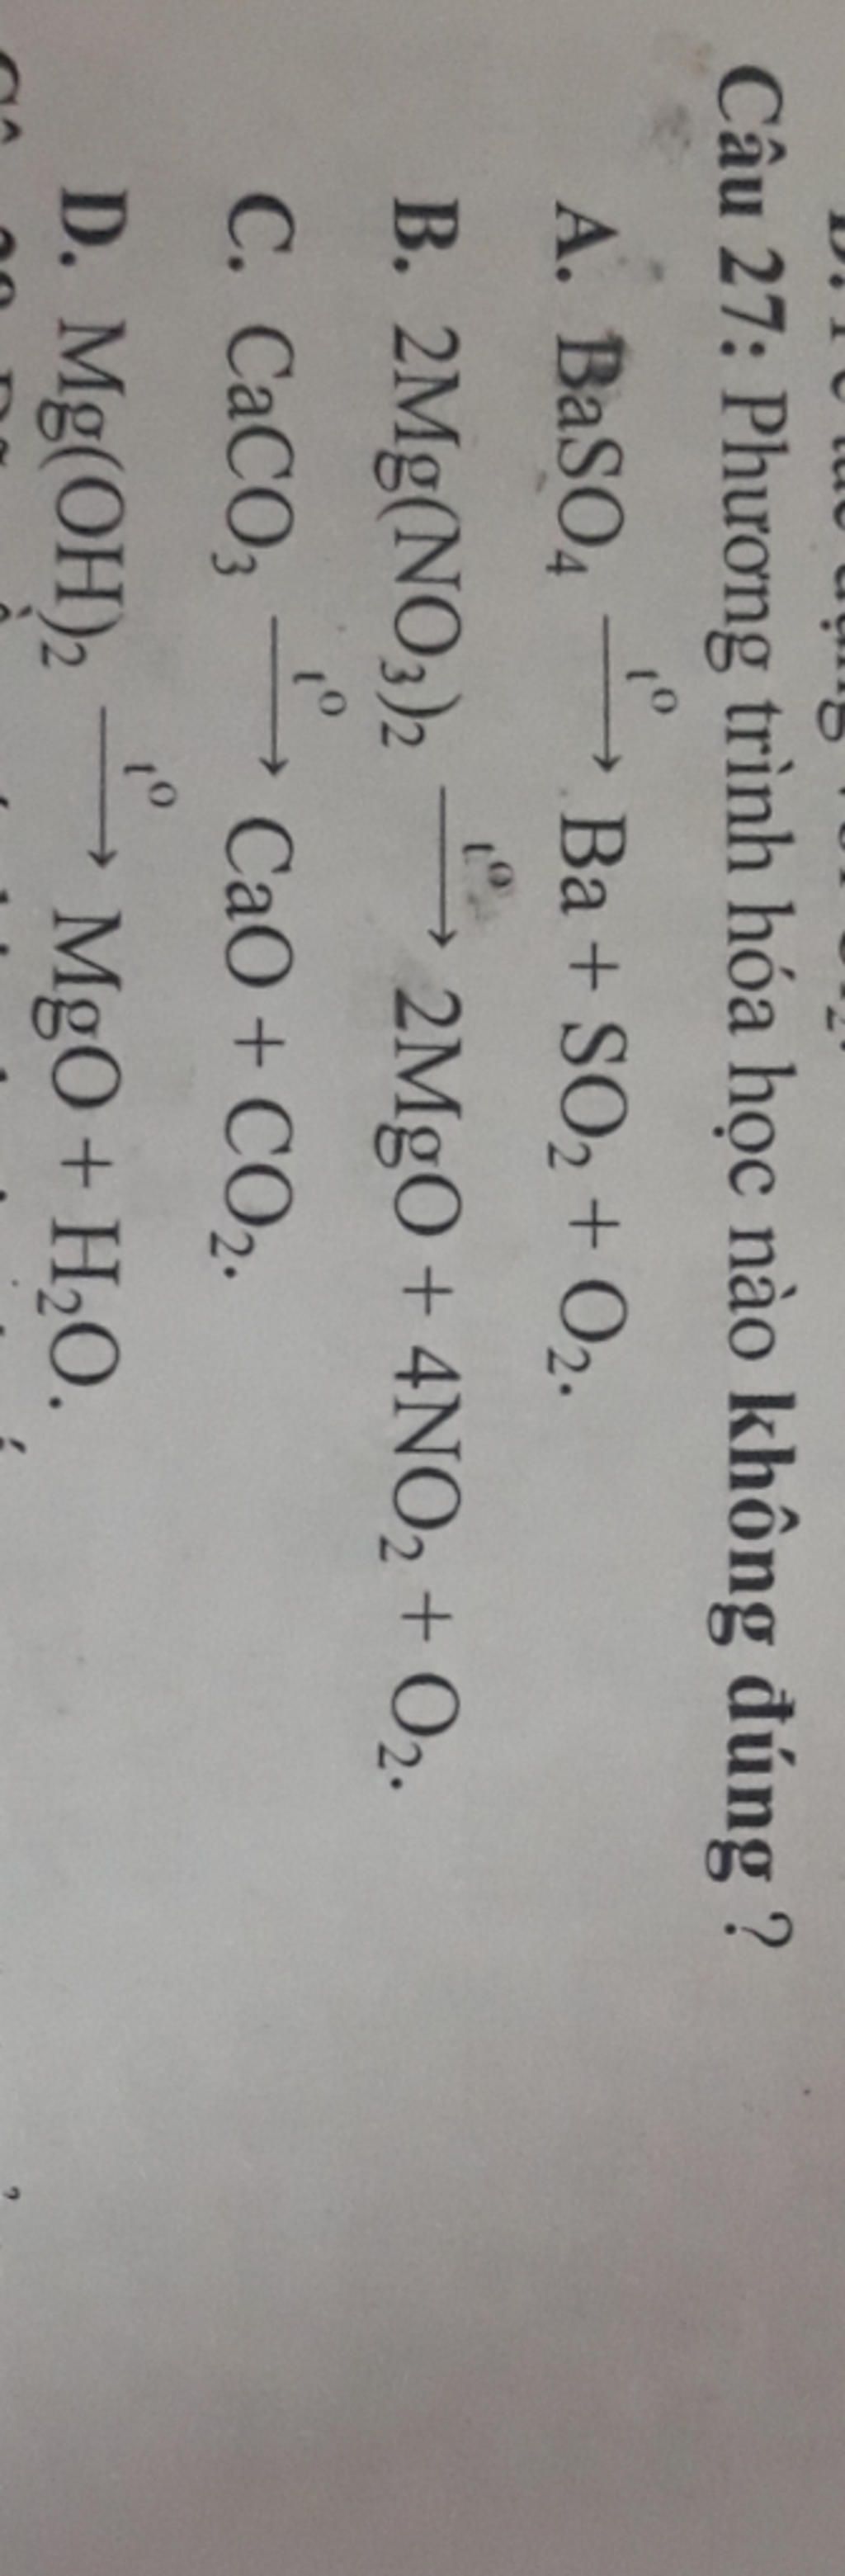 Như vậy, trong phản ứng BaSO4 + O2, BaSO4 được oxi hóa hay khử?
